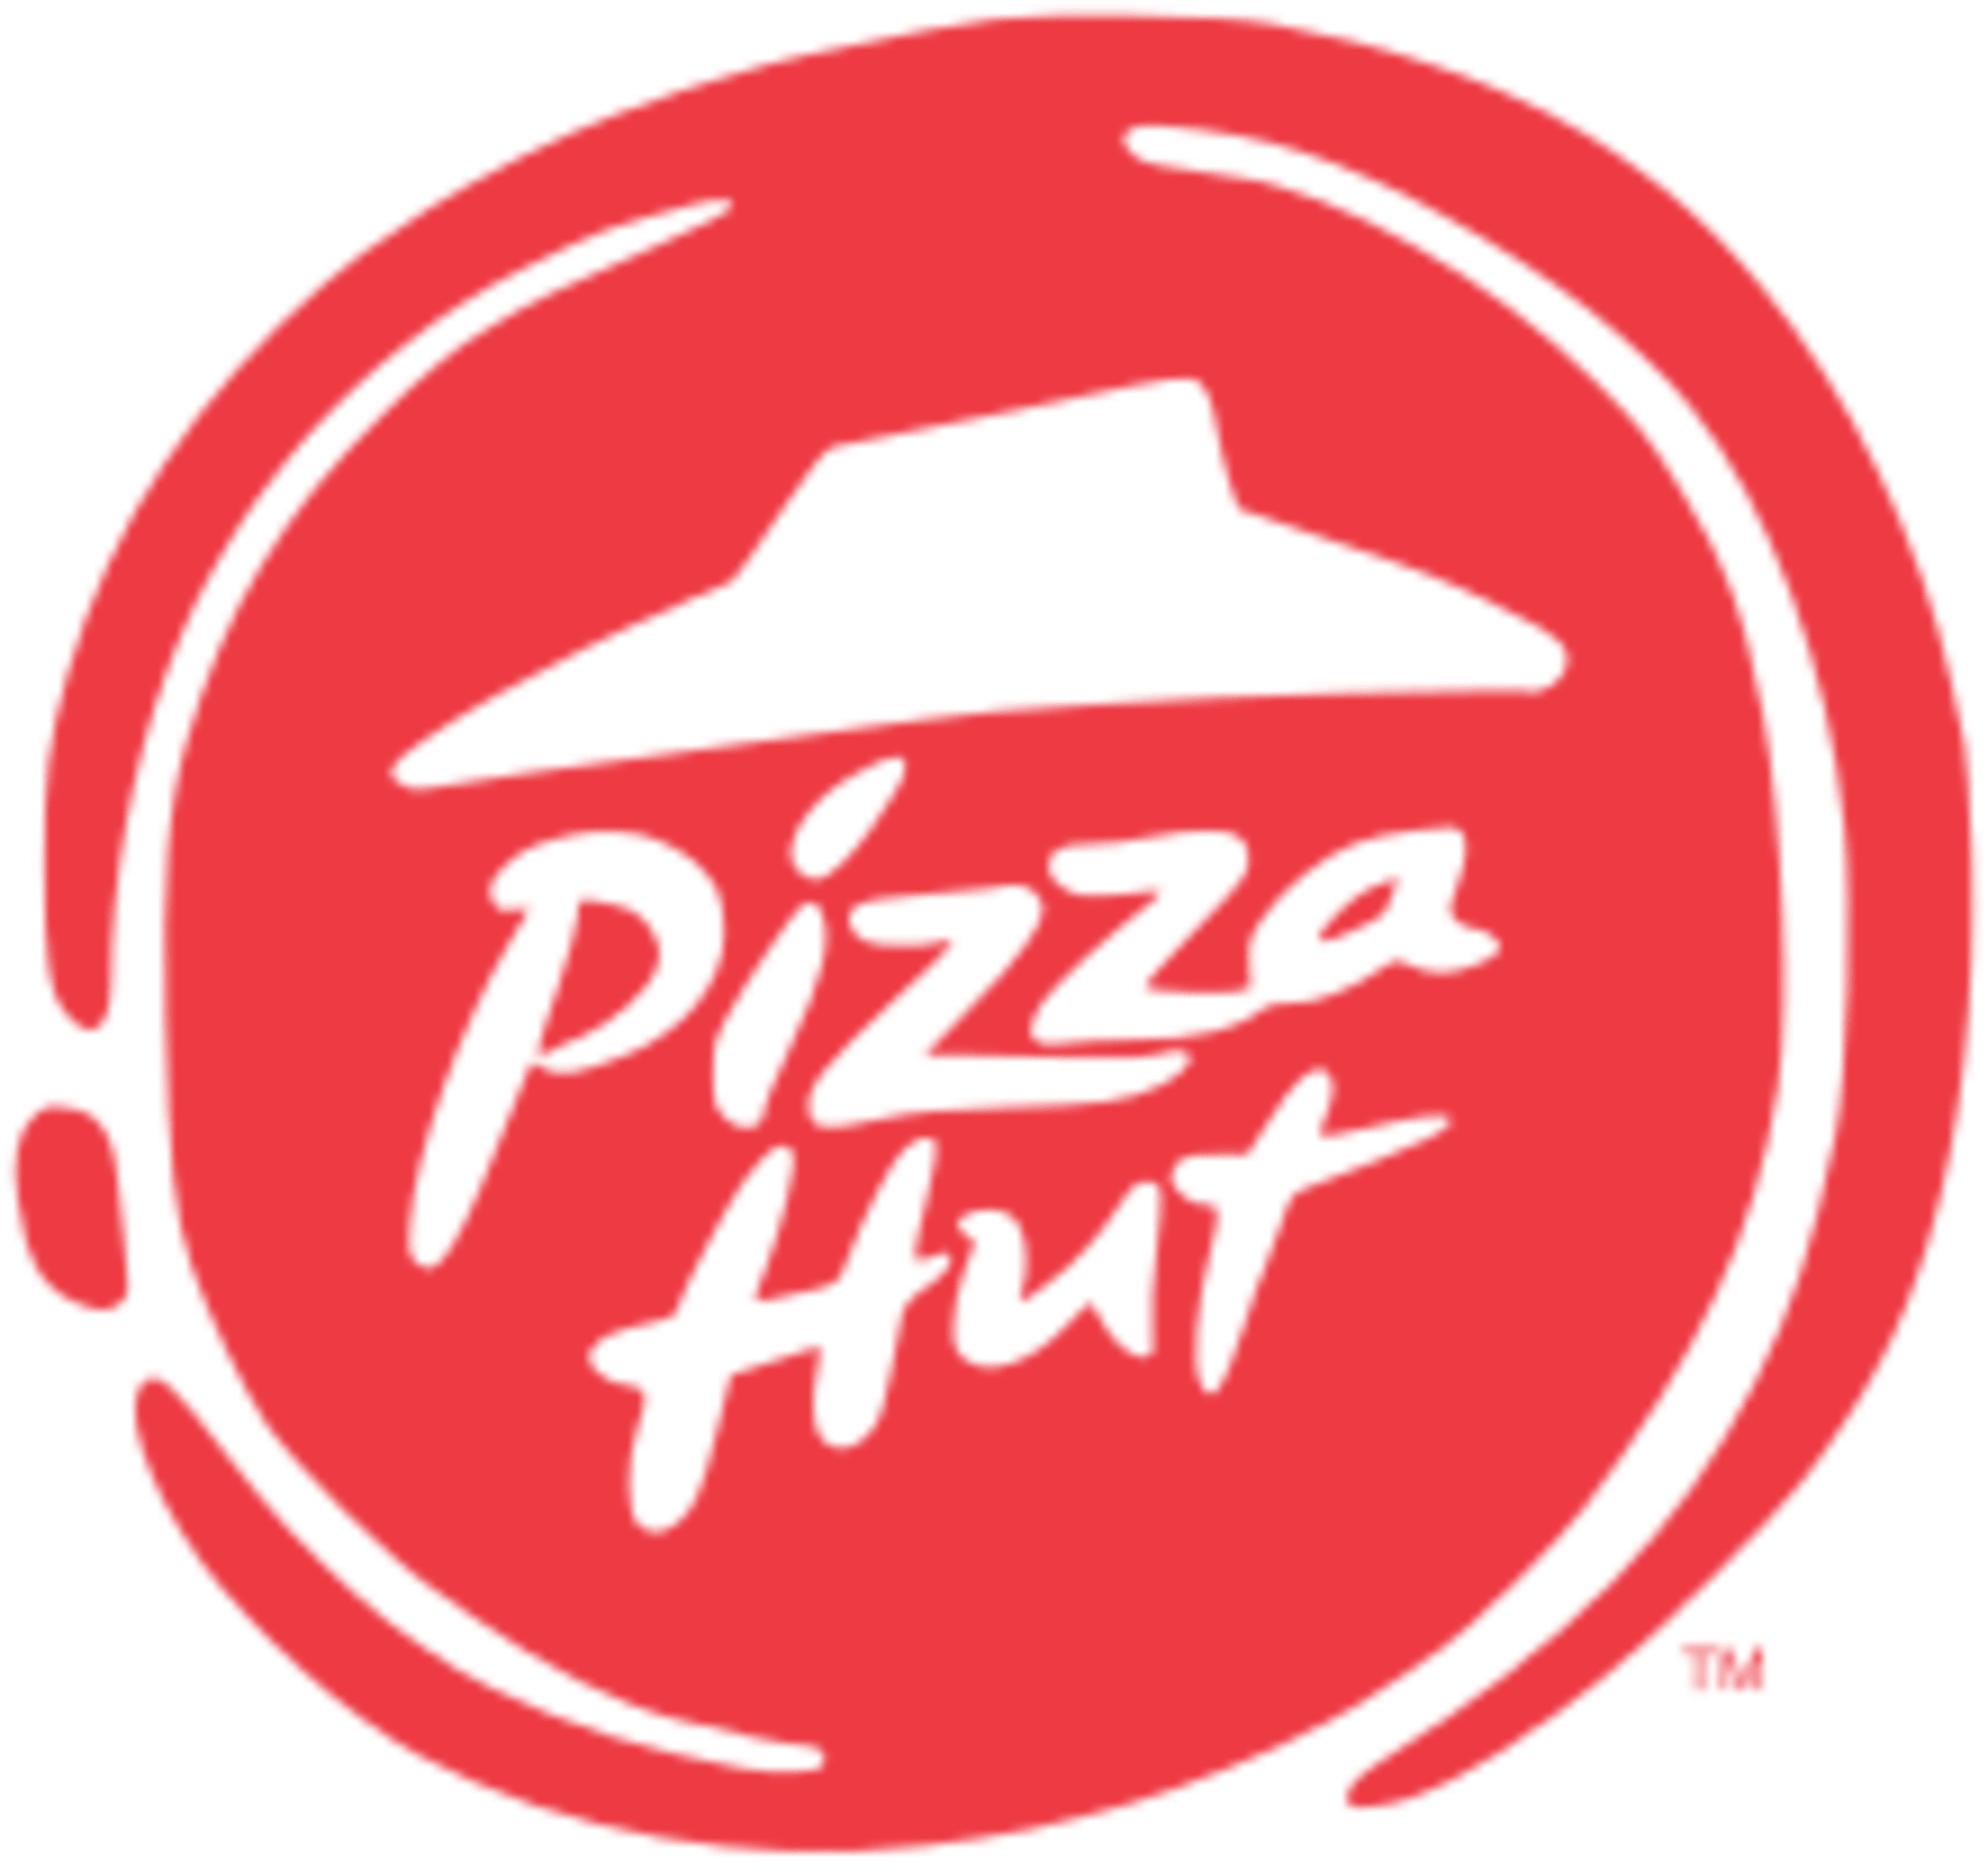 Pizza HutCode